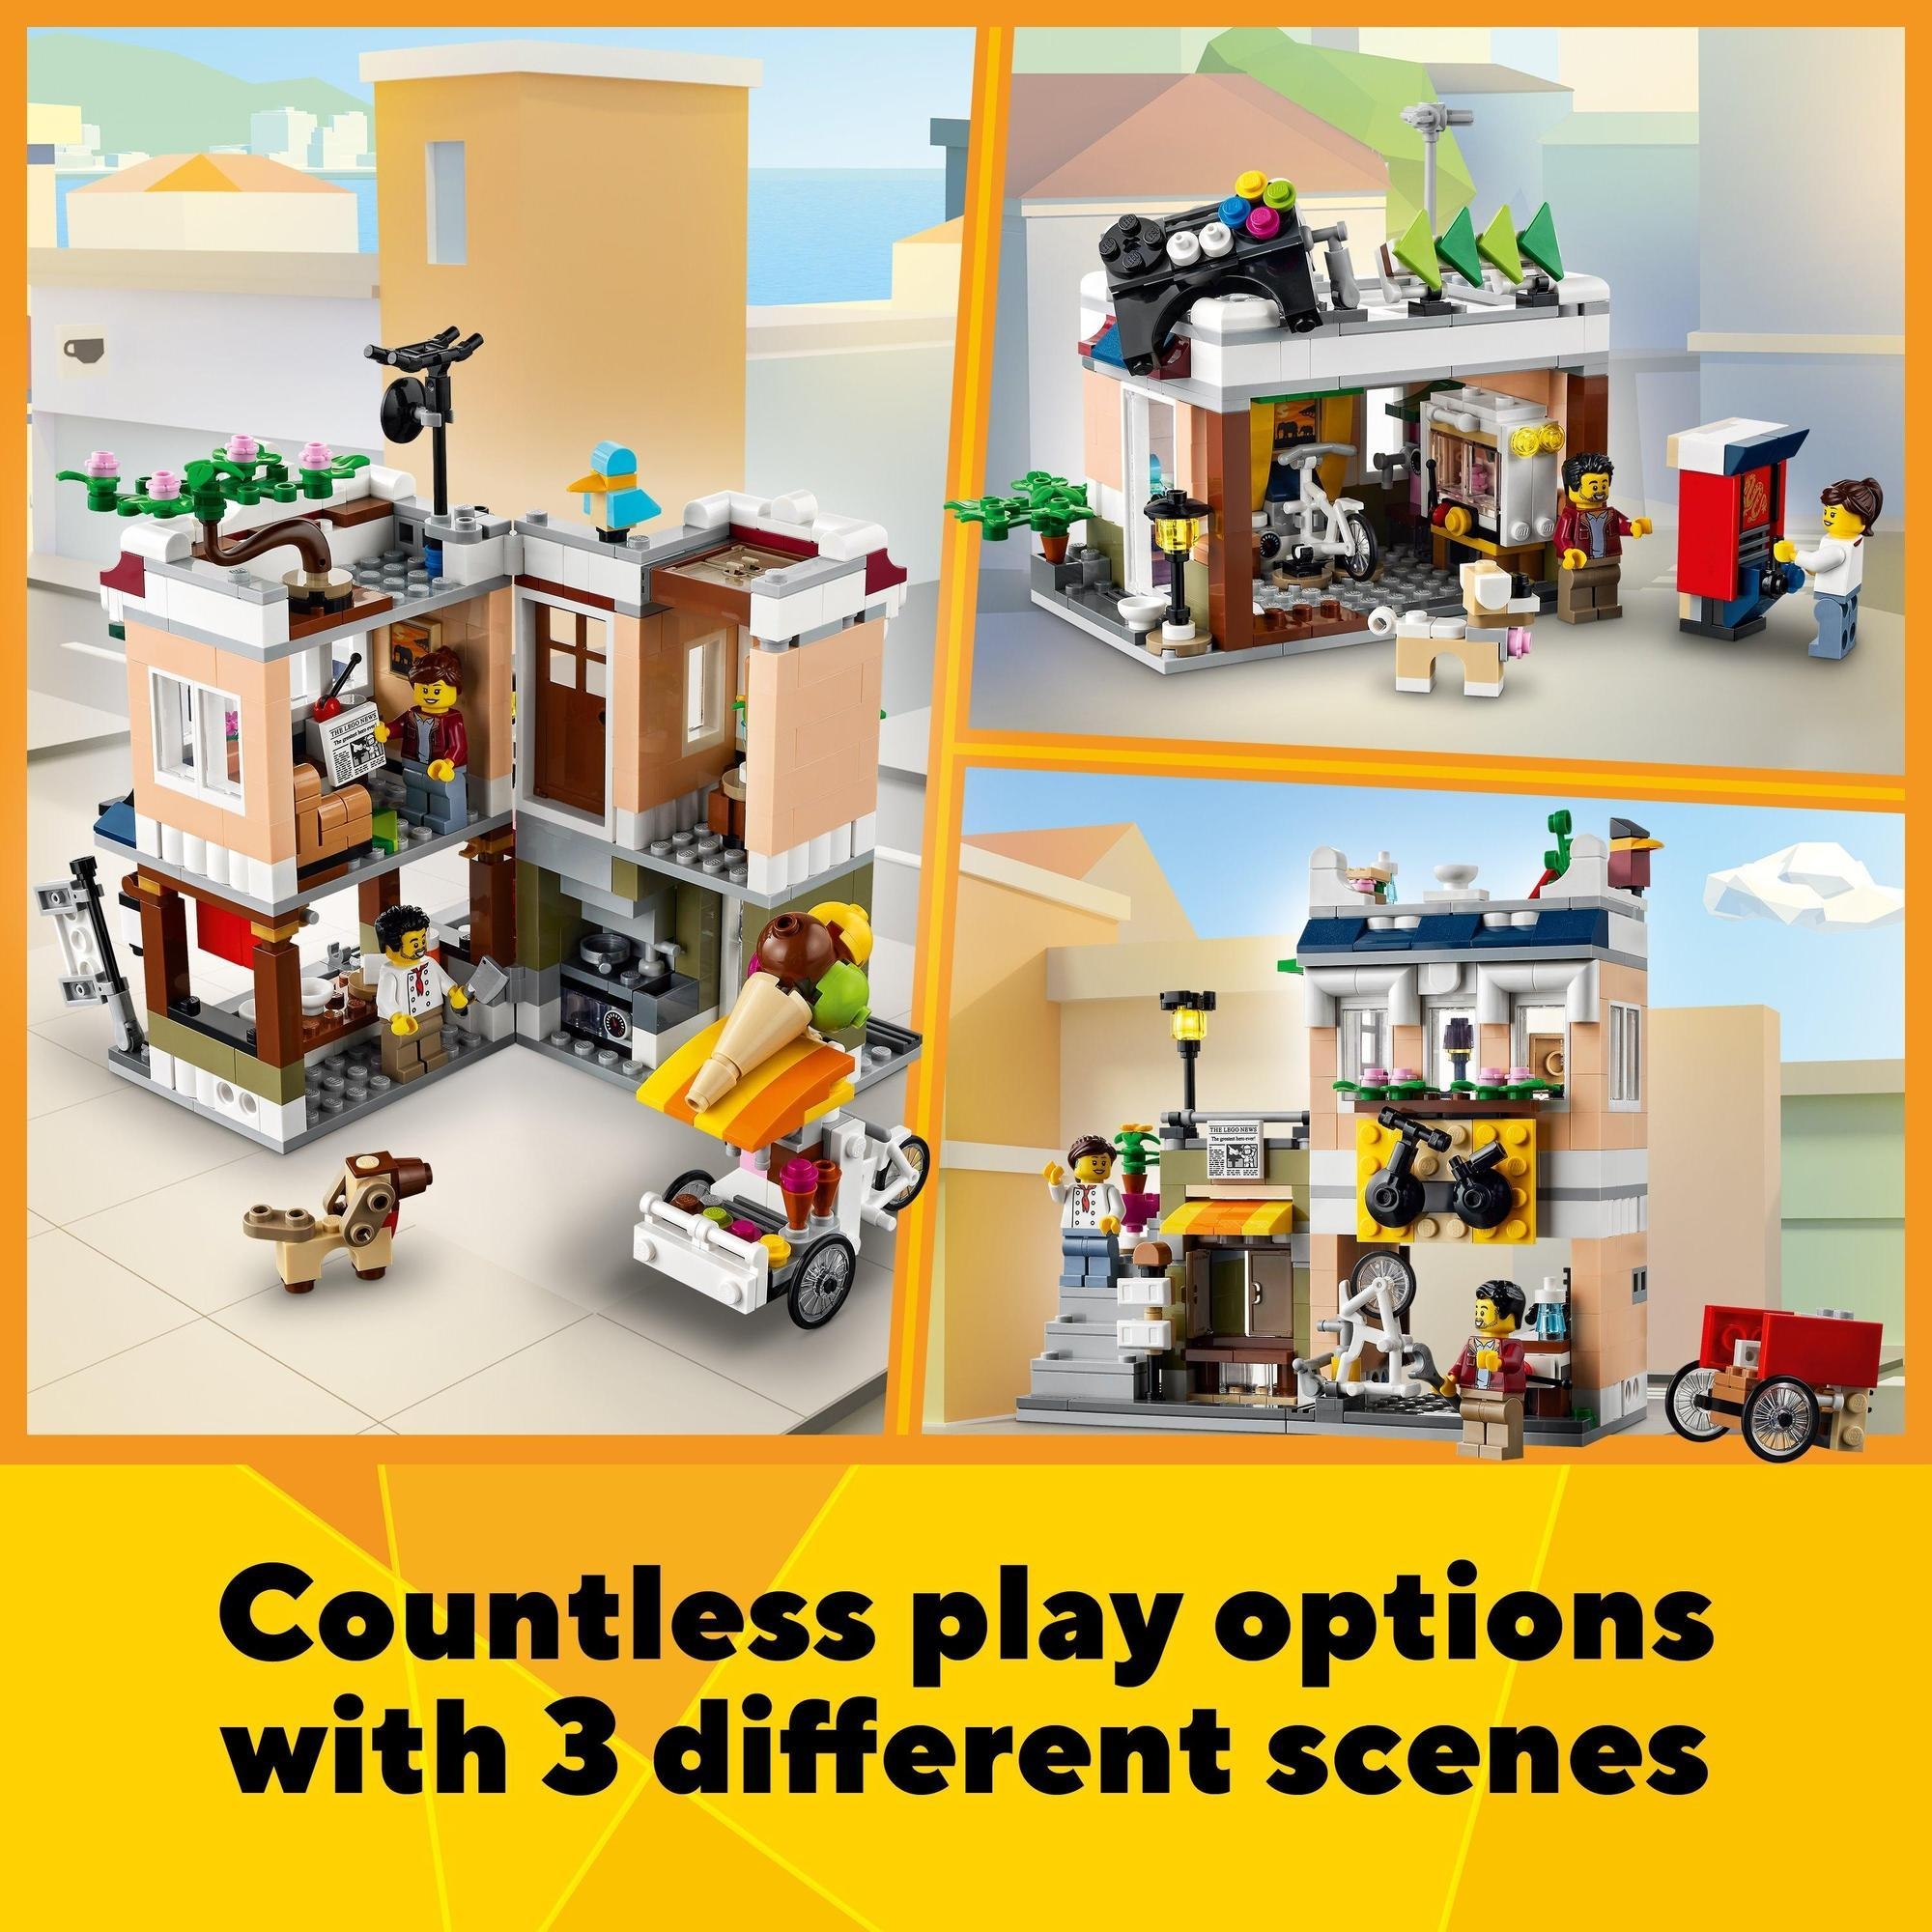 LEGO Creator 31131 Tiệm mì tại trung tâm thành phố (569 chi tiết)